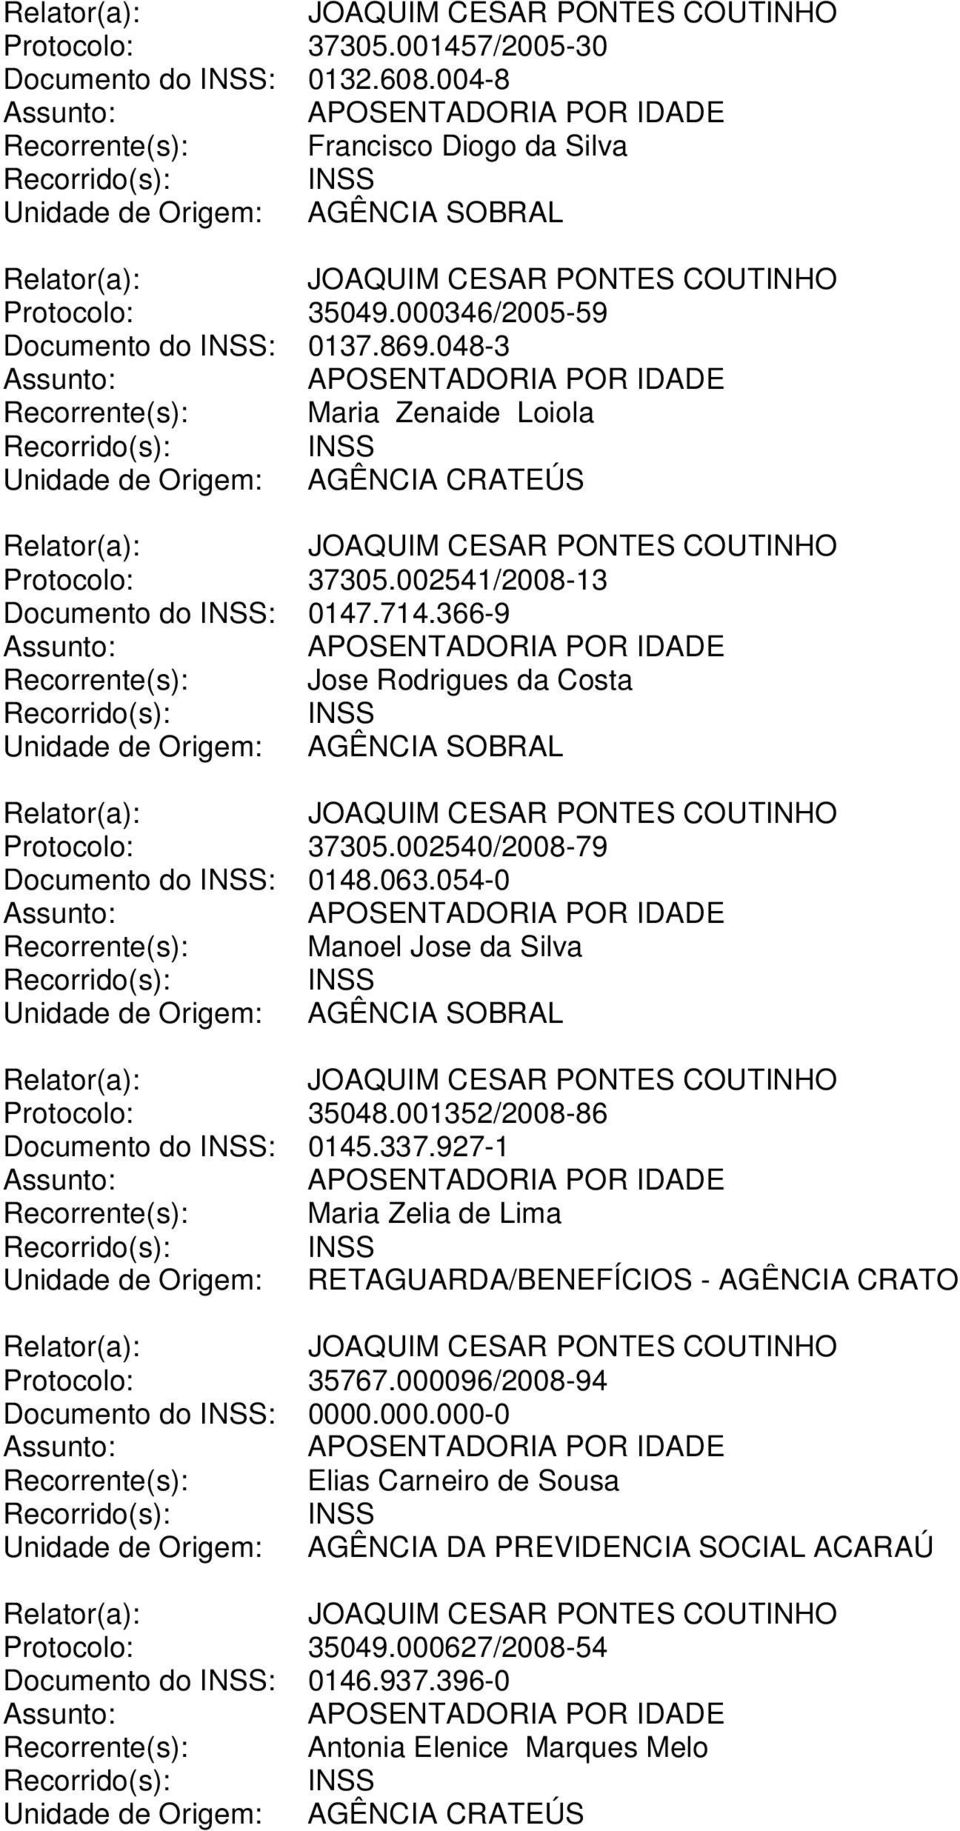 002540/2008-79 Documento do INSS: 0148.063.054-0 Recorrente(s): Manoel Jose da Silva Protocolo: 35048.001352/2008-86 Documento do INSS: 0145.337.